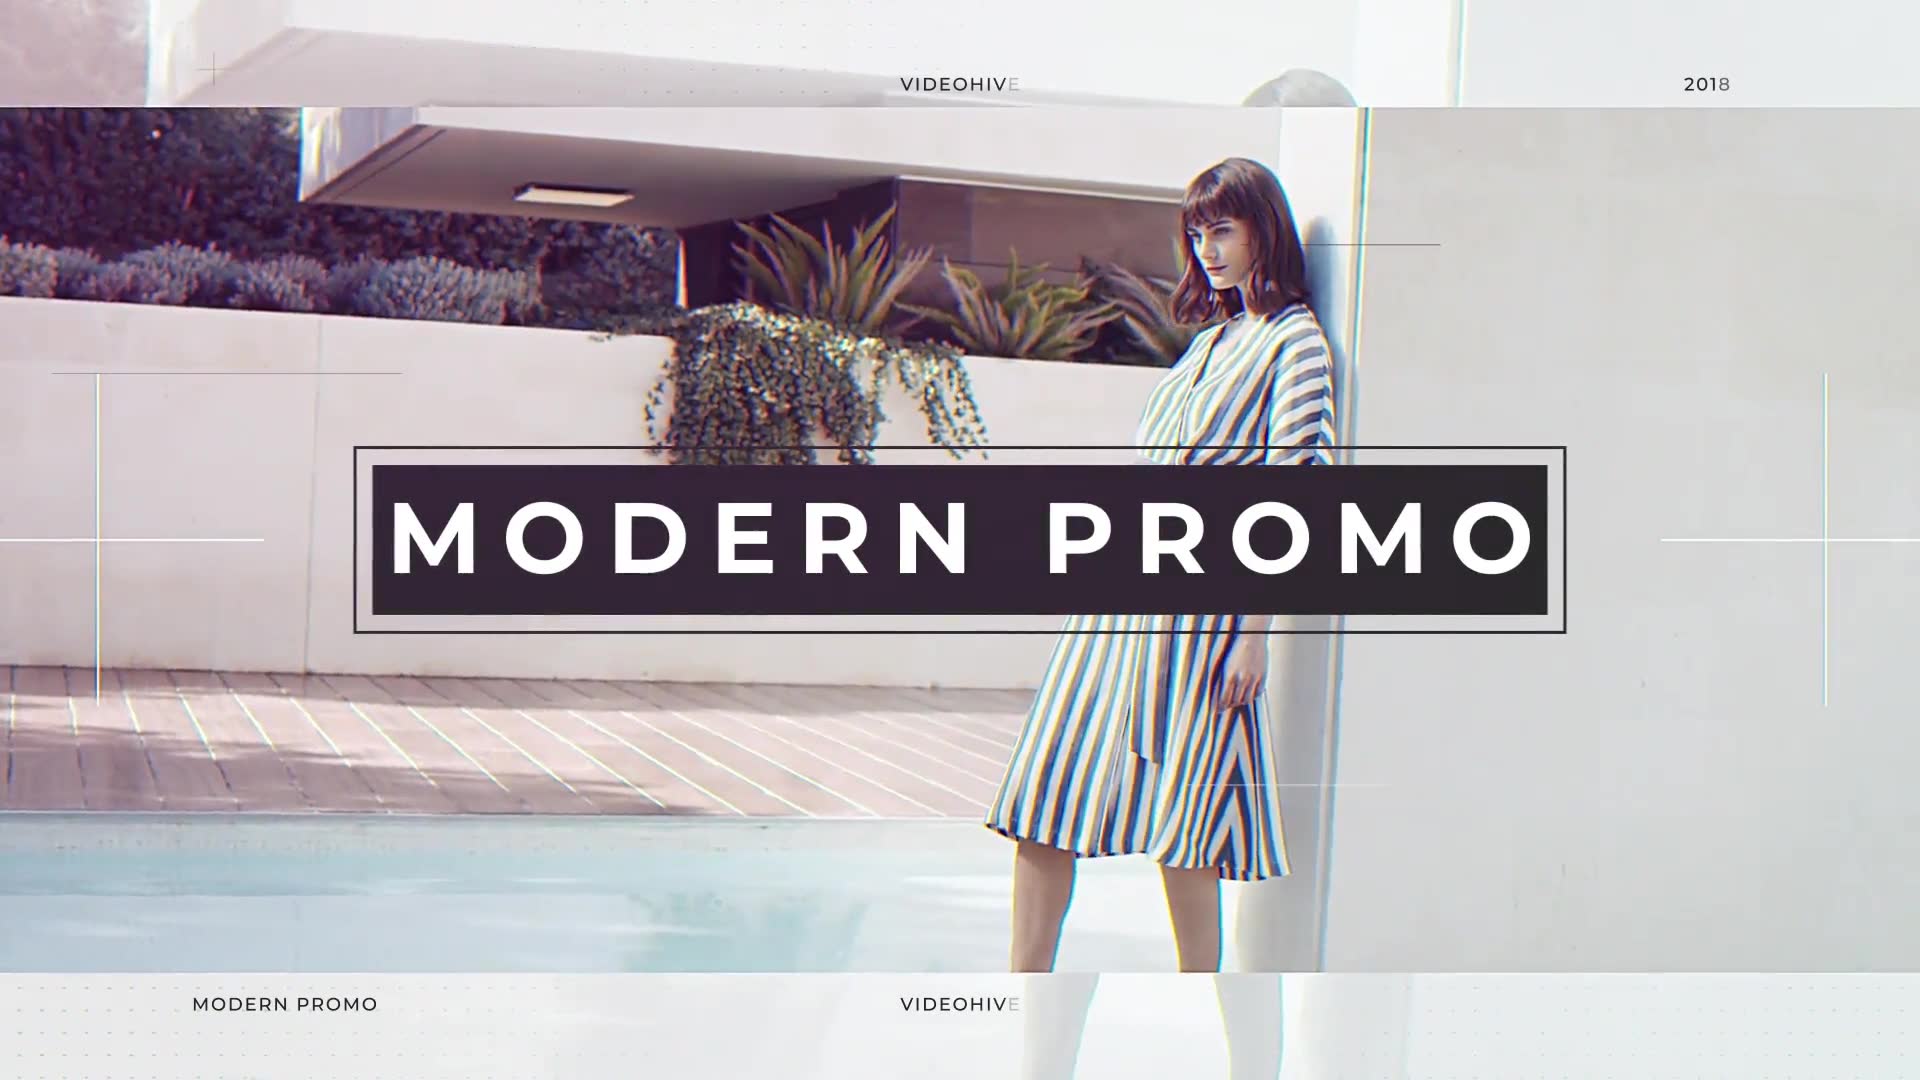 Modern Promo Videohive 30070327 Premiere Pro Image 2